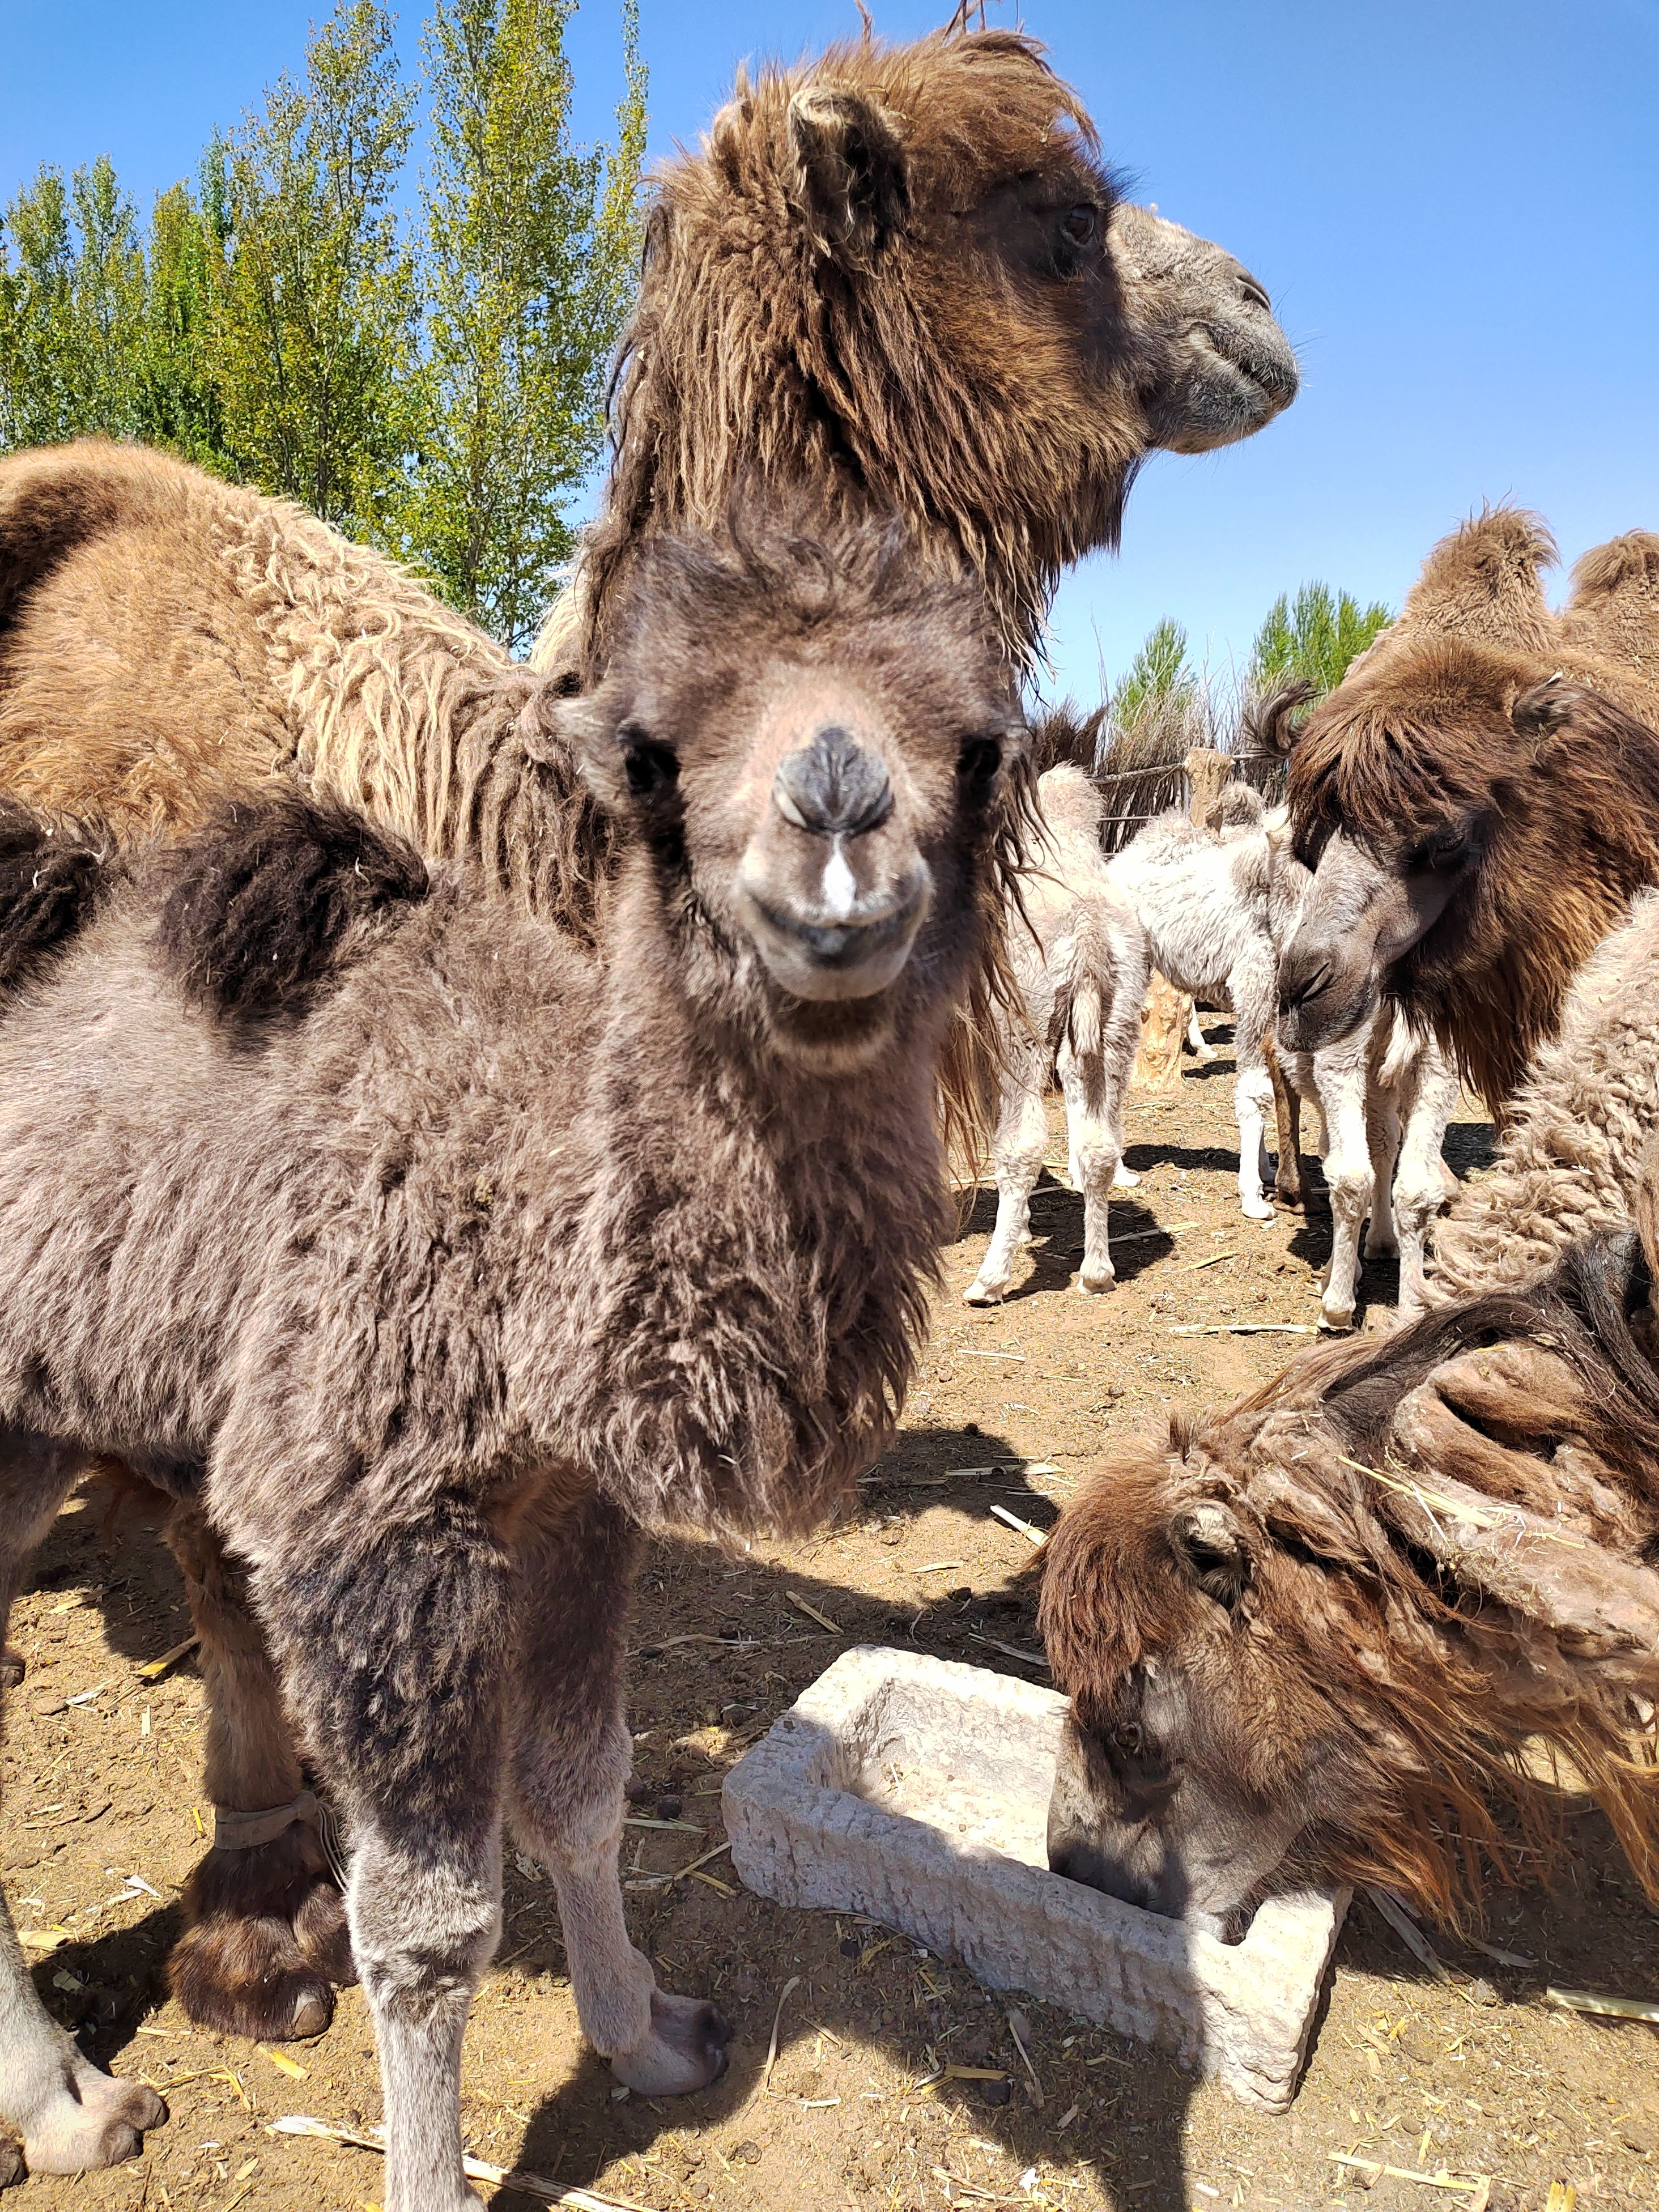 翁牛特旗卖骆驼带驼羔30个左右，详情联系后在谈